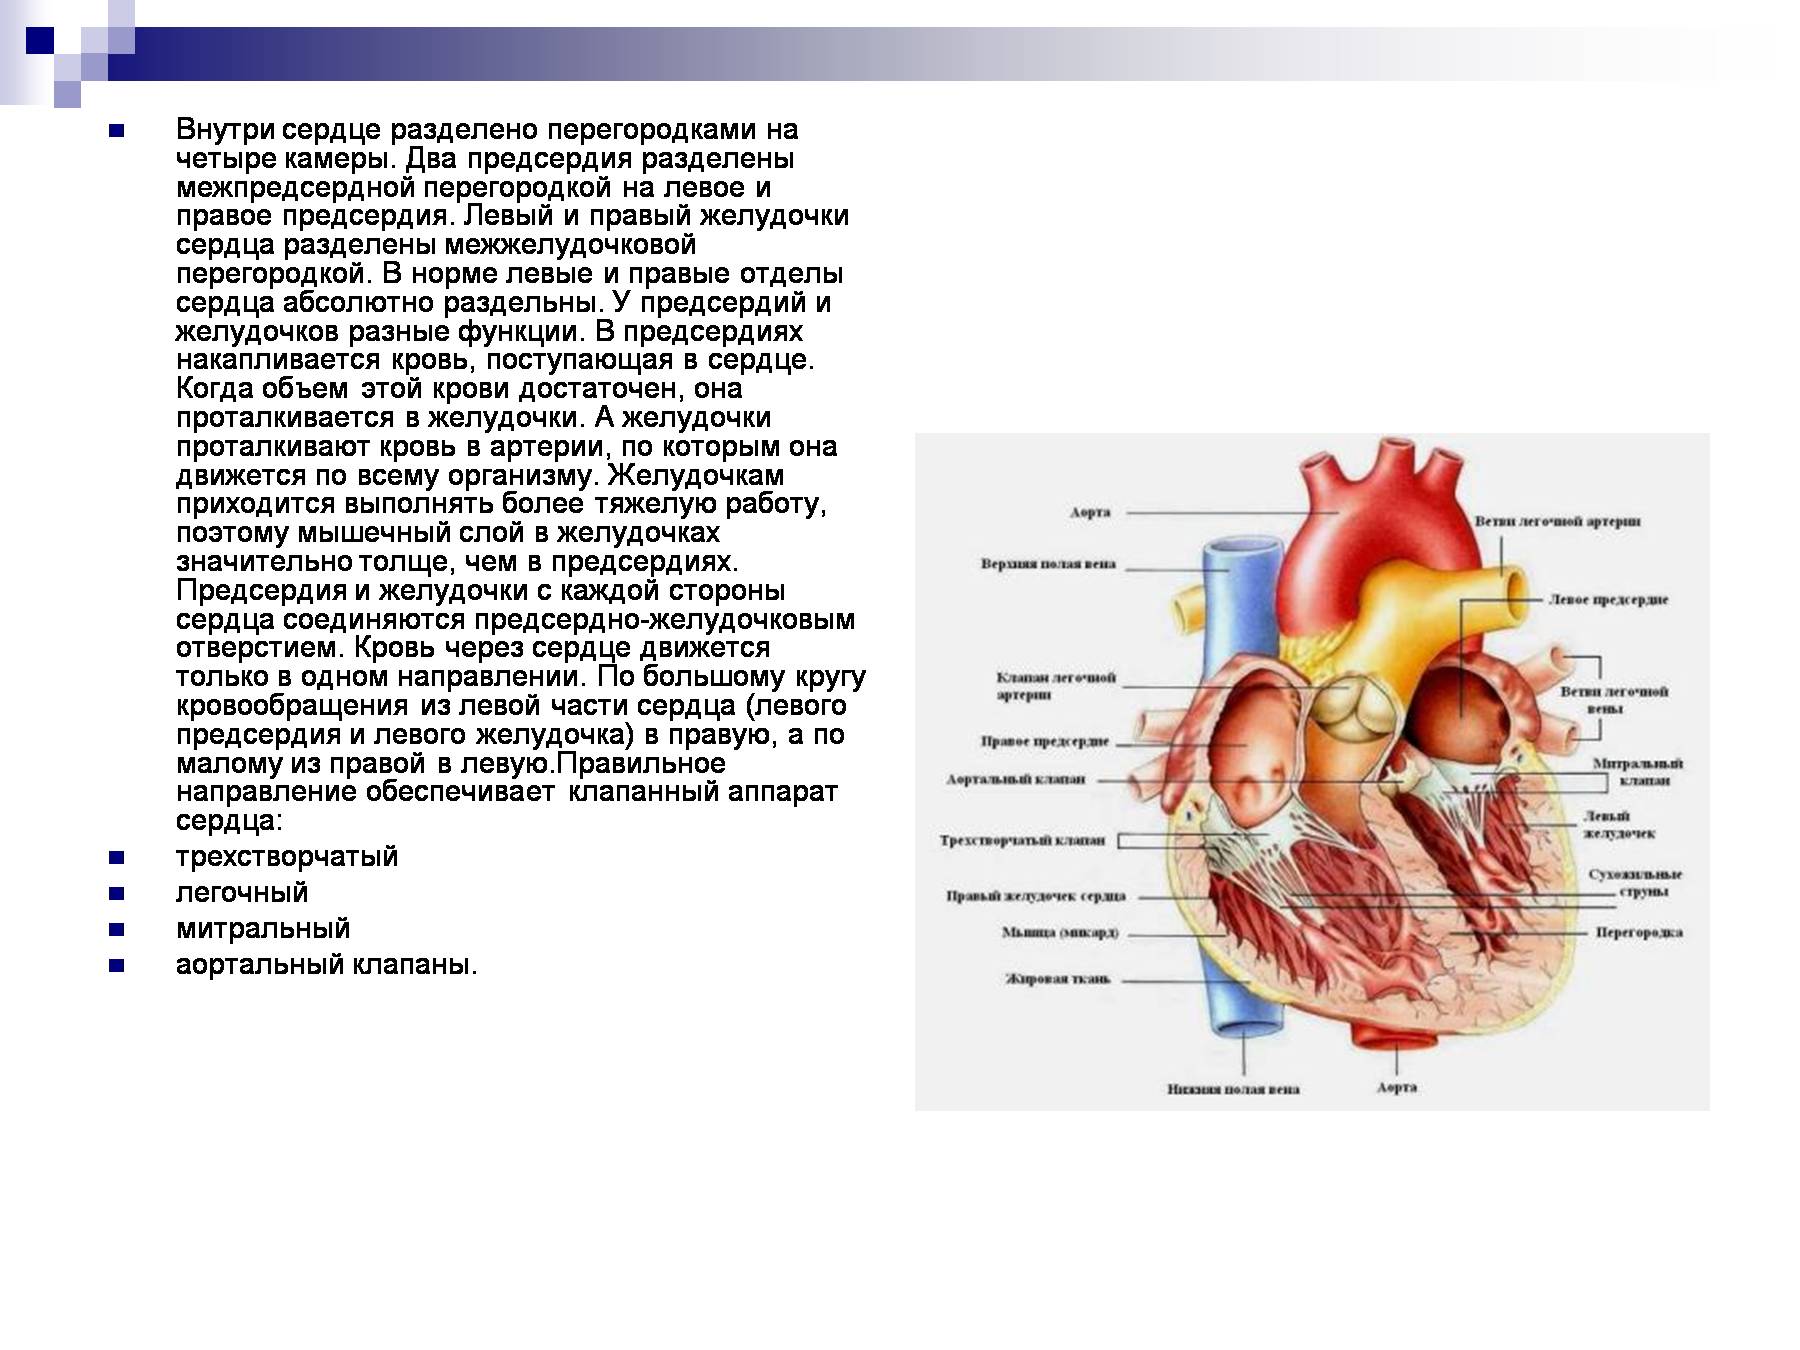 Особенности предсердия. Межпредсердная перегородка сердца строение. Строение межпредсердной перегородки сердца. Перегородка предсердий и желудочков сердца. Расширение левого предсердия (объем 88 мл).